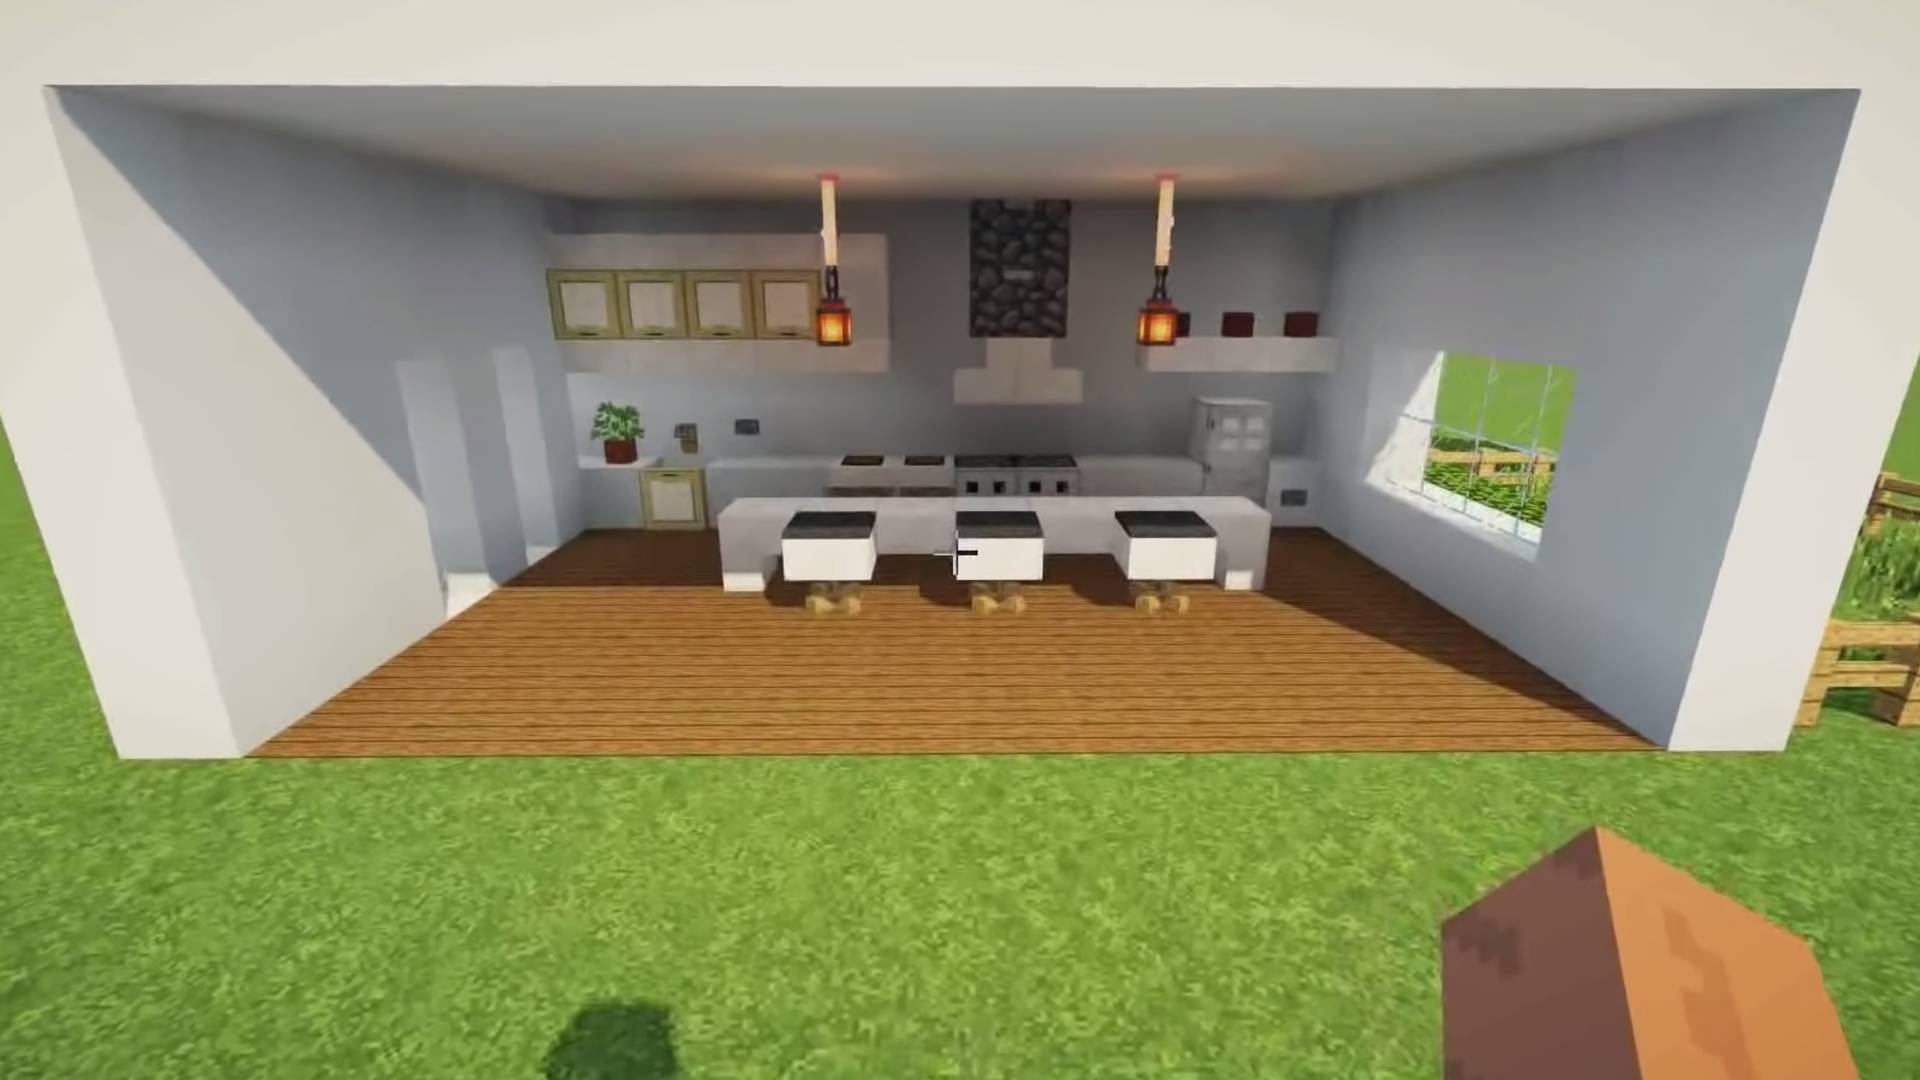  minecraft modern kitchen ideas